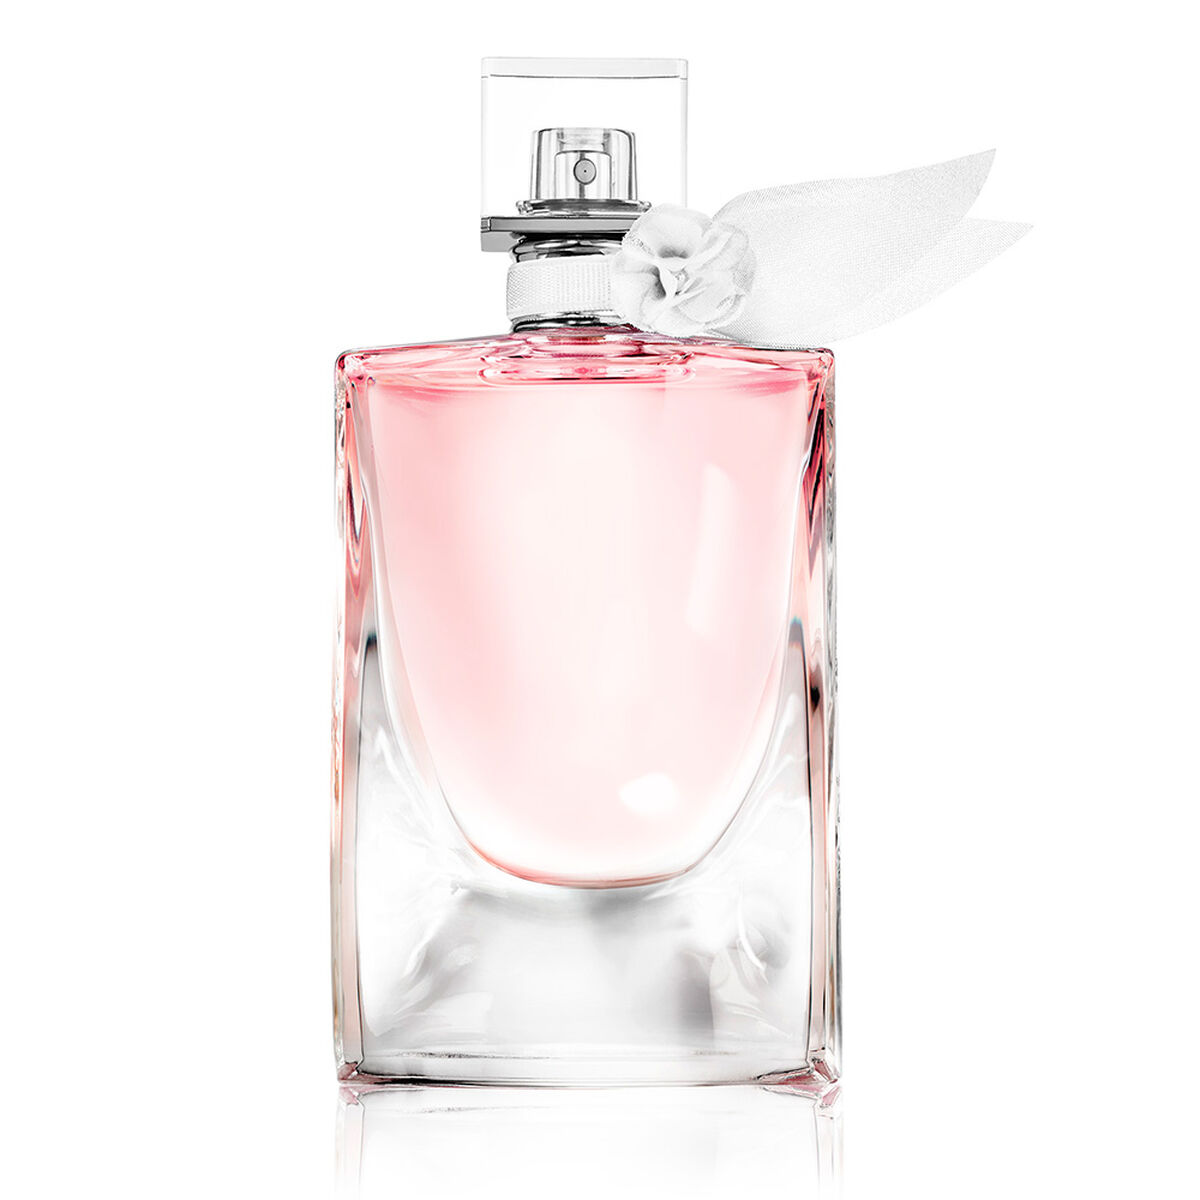 Perfume Lancome 100 ml